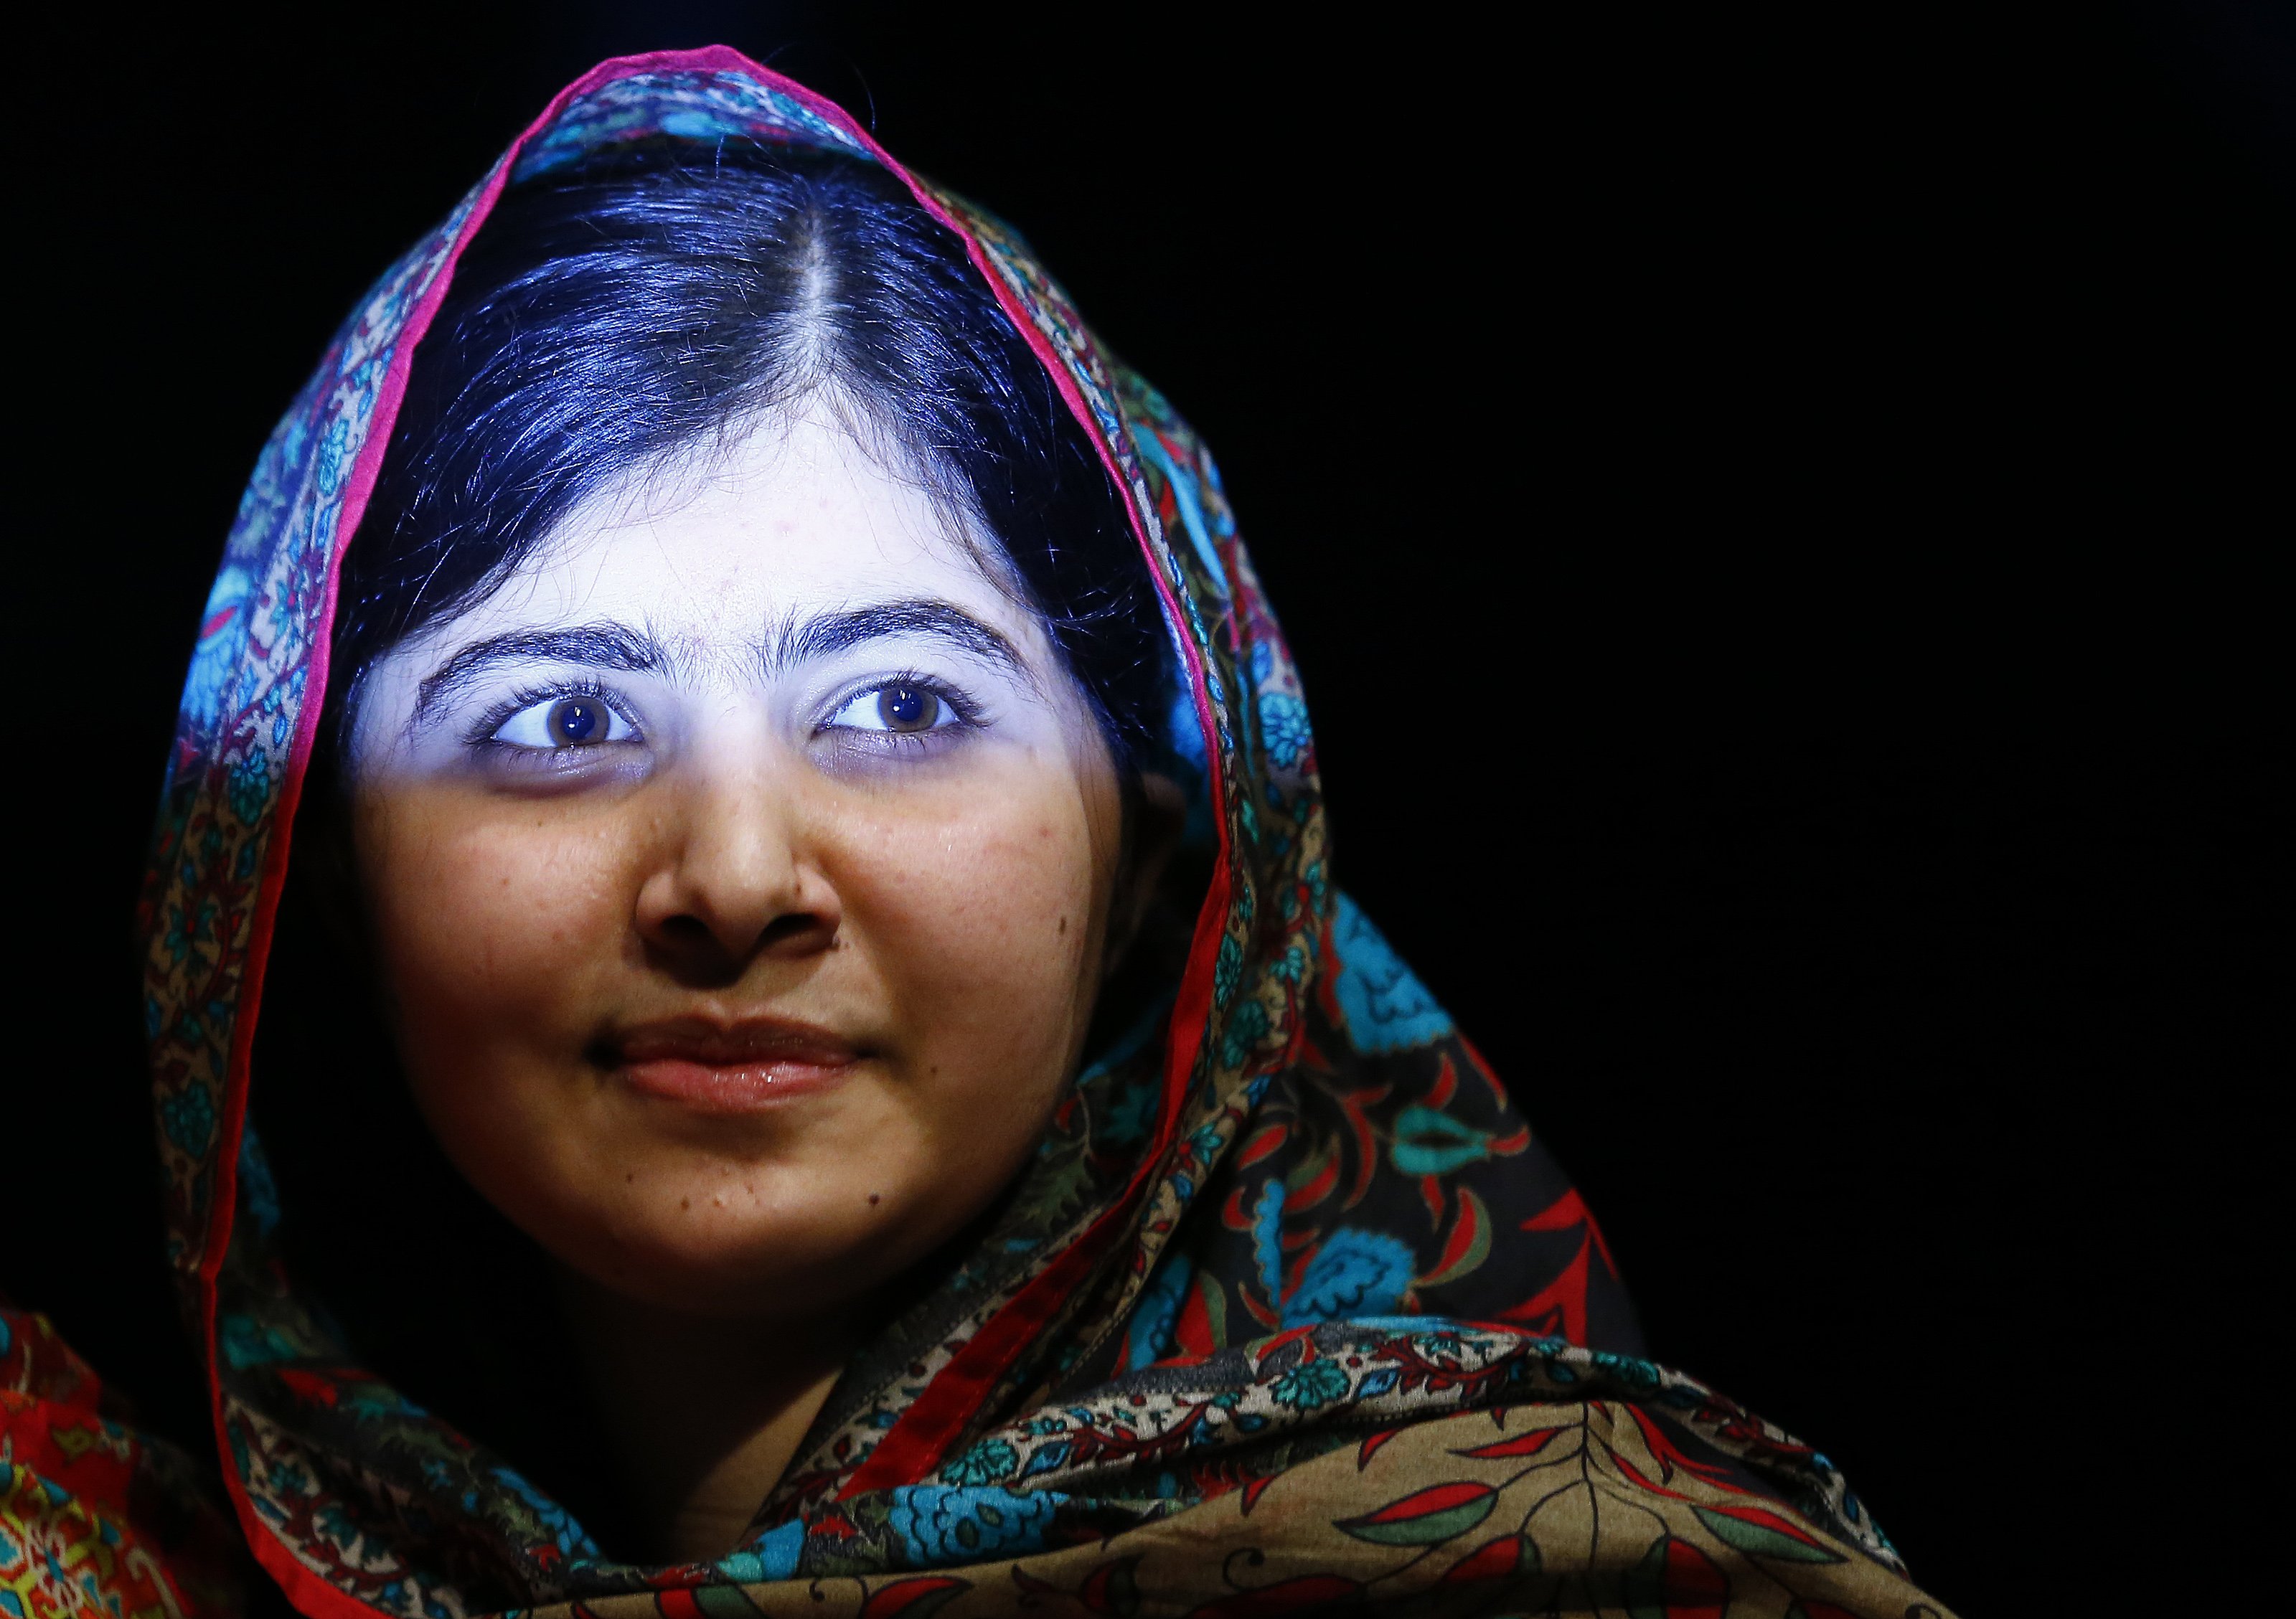 Malala dedica el Nobel de la Paz a todos los niños cuyas voces deben ser escuchadas